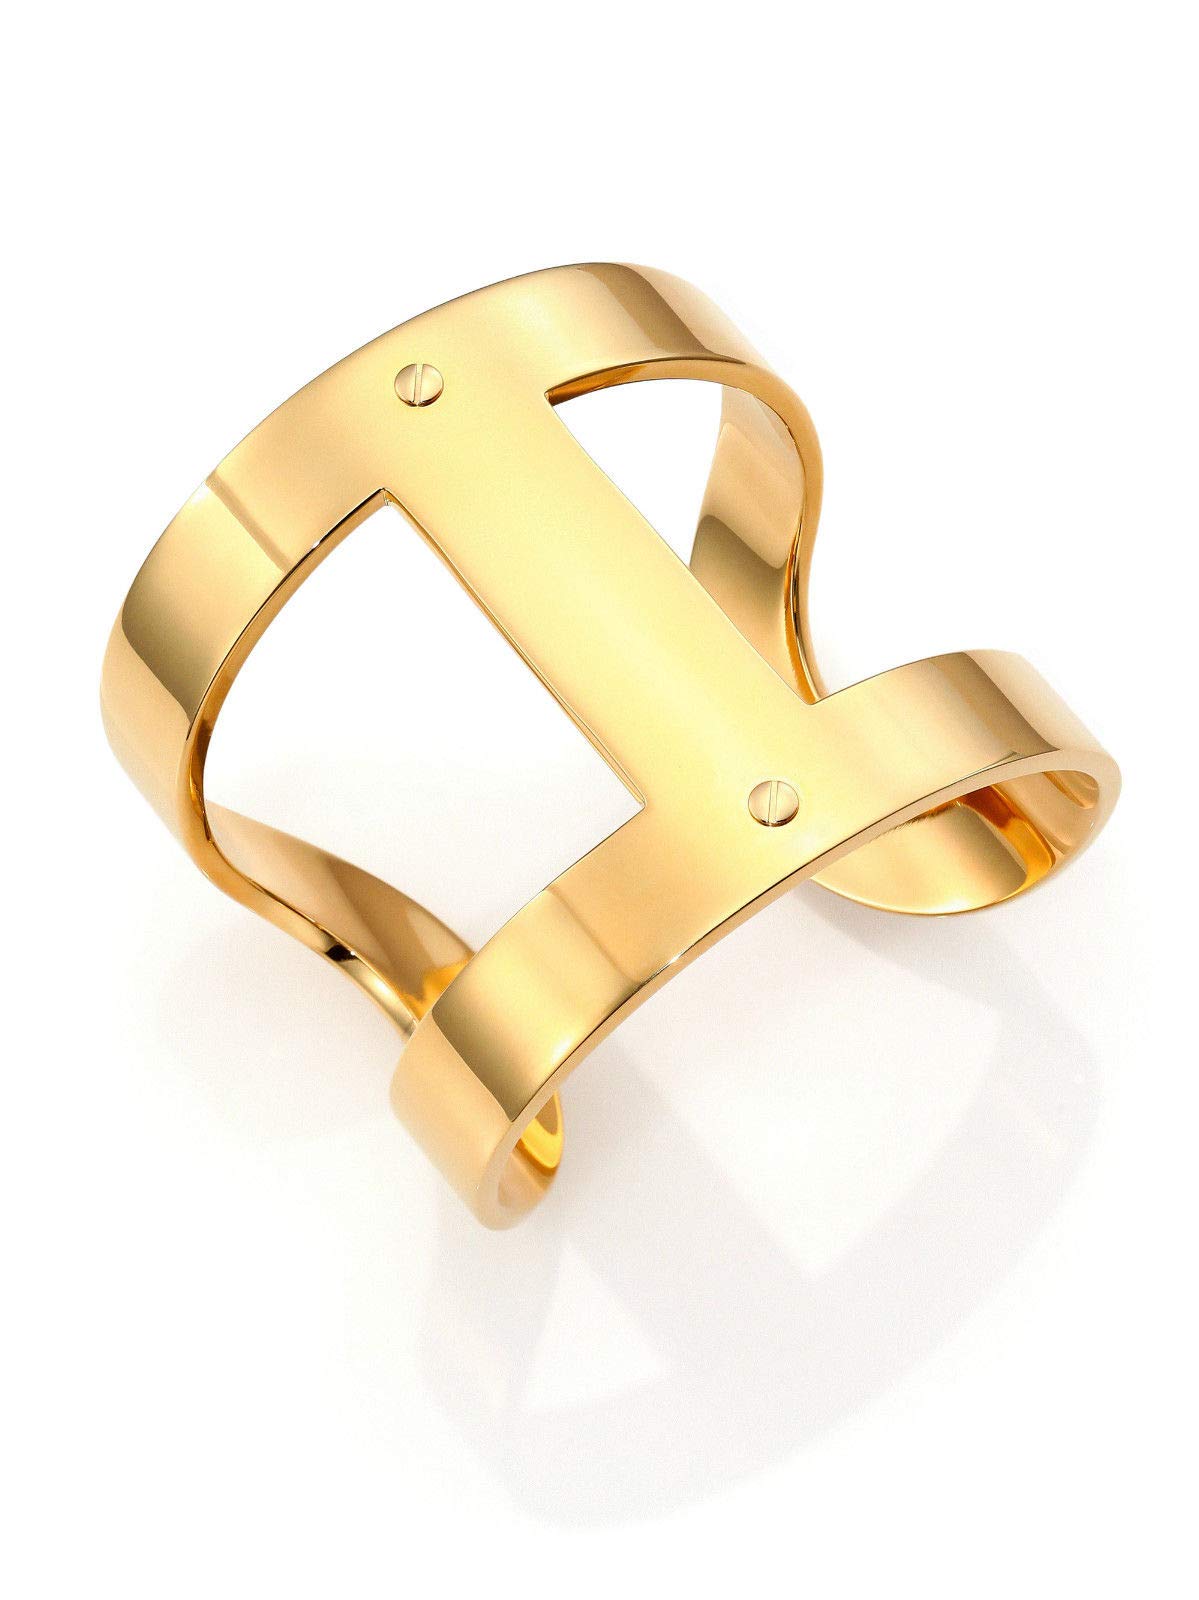 Michael Kors MKJ44607107 Heritage Maritime Gold Tone Ring Size US 7